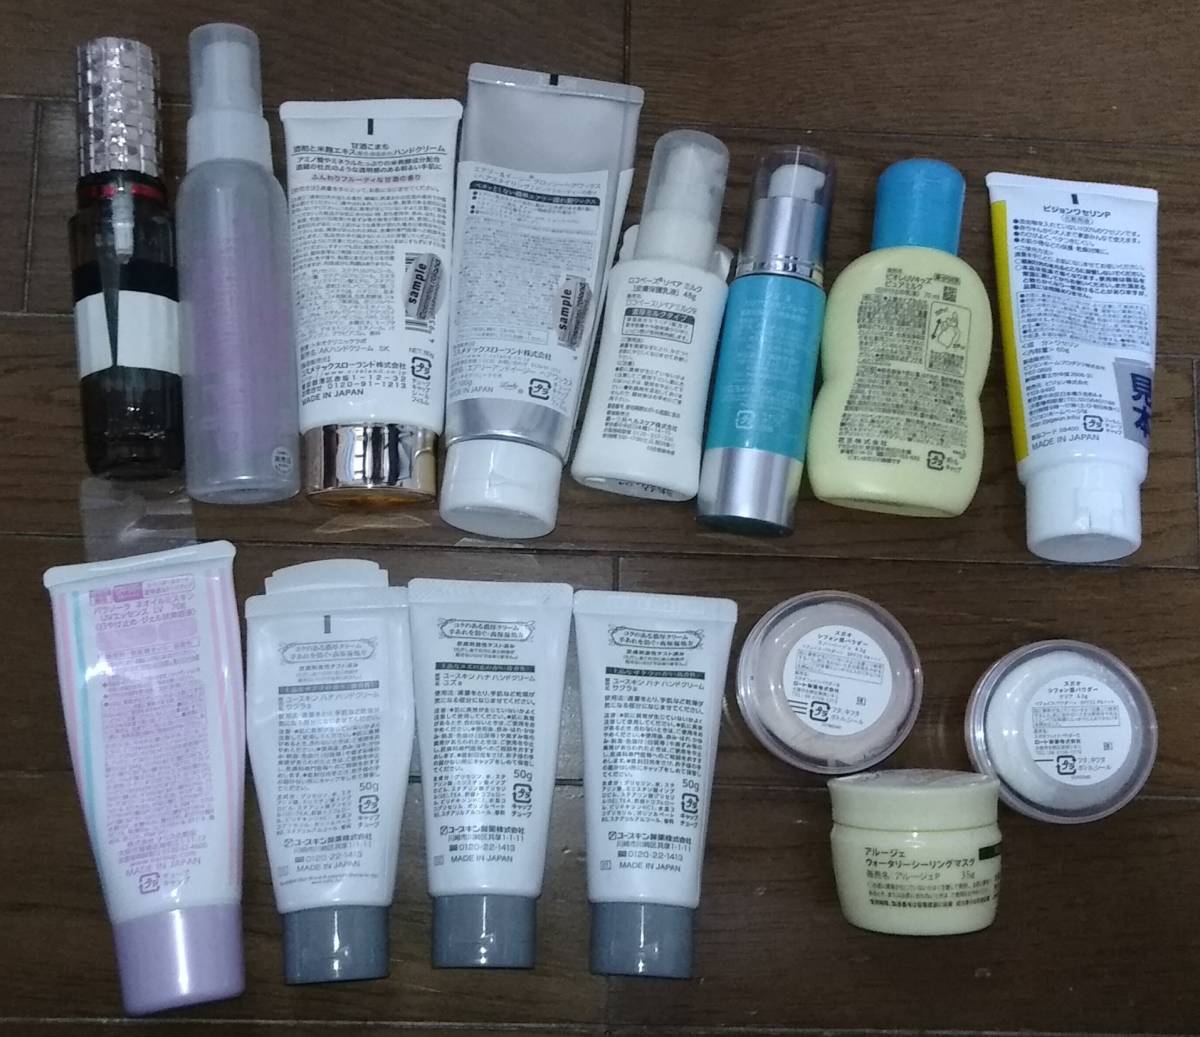 [ тестер ][ продажа комплектом ] Shiseido MAQuillAGE *KOSE макияж keep Mist * крем для рук и т.п. 15 позиций комплект 